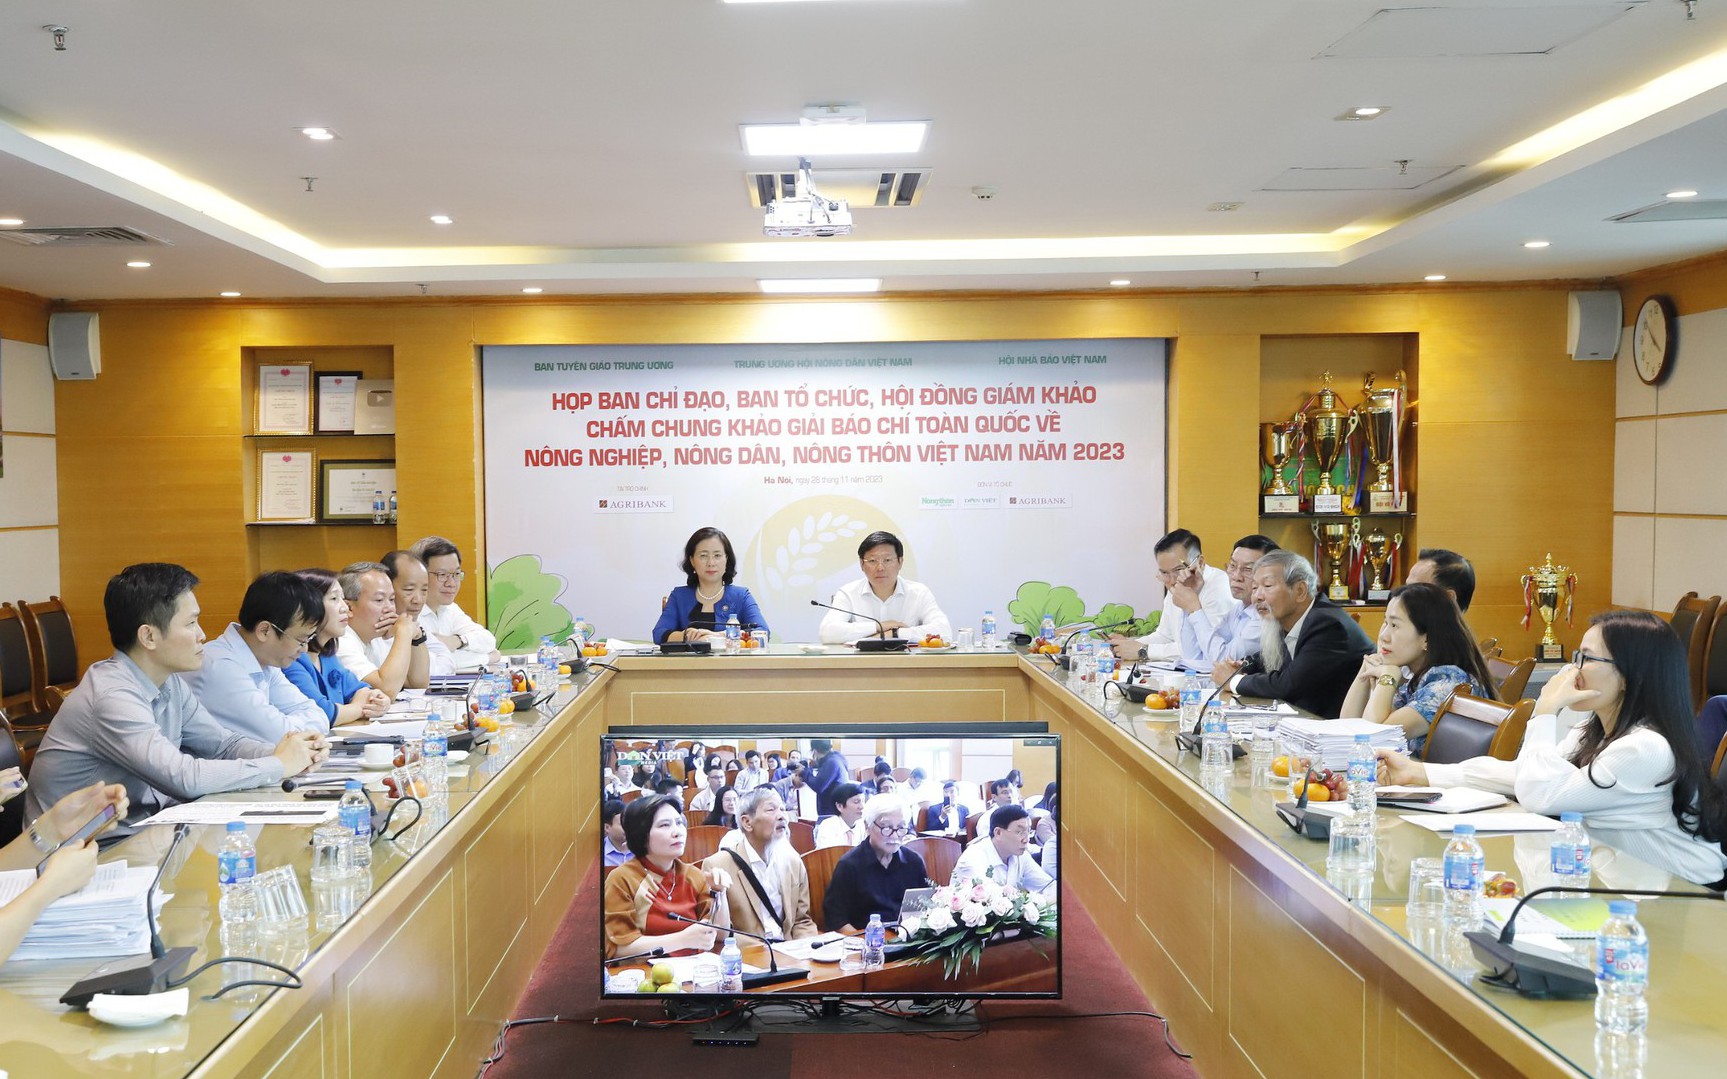 Giải báo chí toàn quốc về nông nghiệp, nông dân, nông thôn Việt Nam 2023: Tổ chức bài bản, chấm công tâm